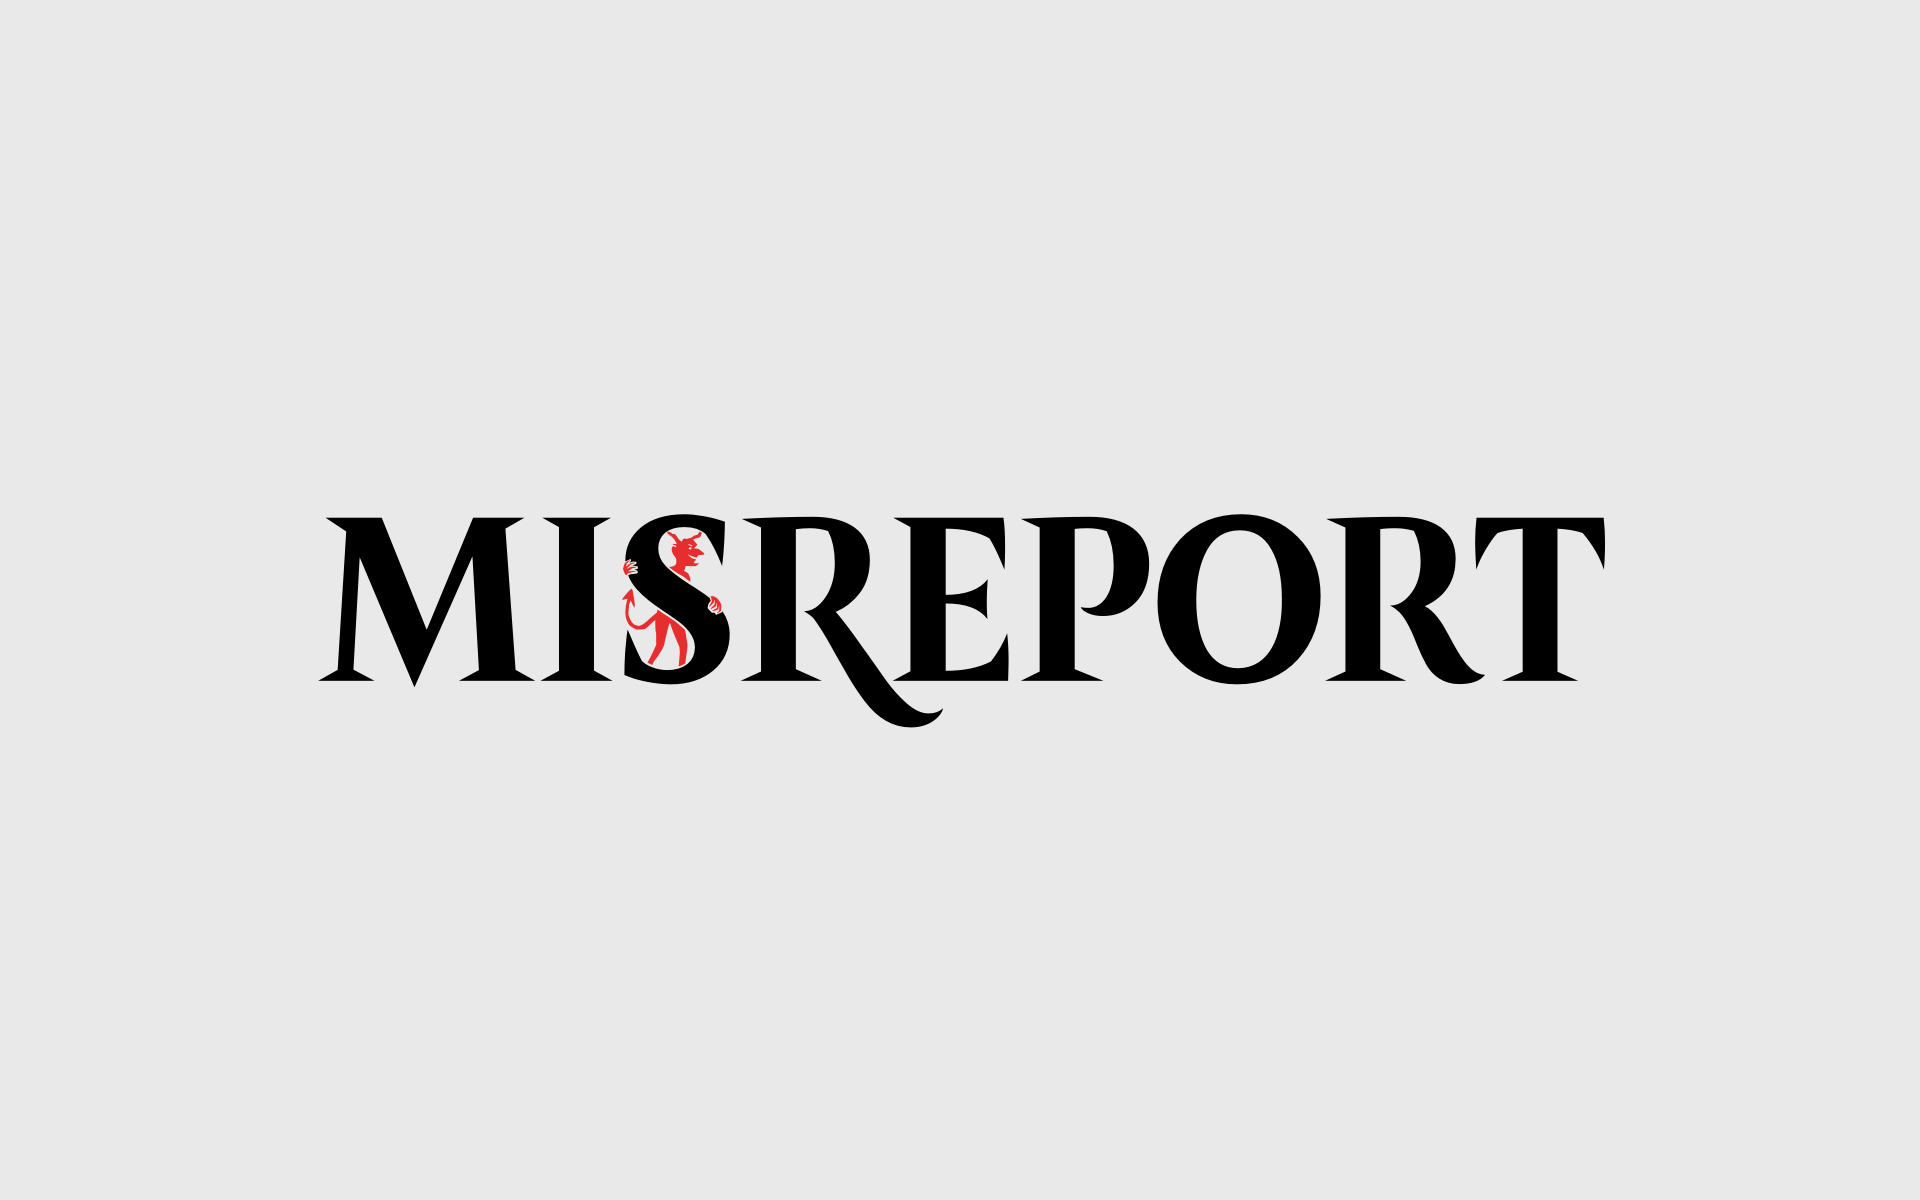 Misreport logo positive.png